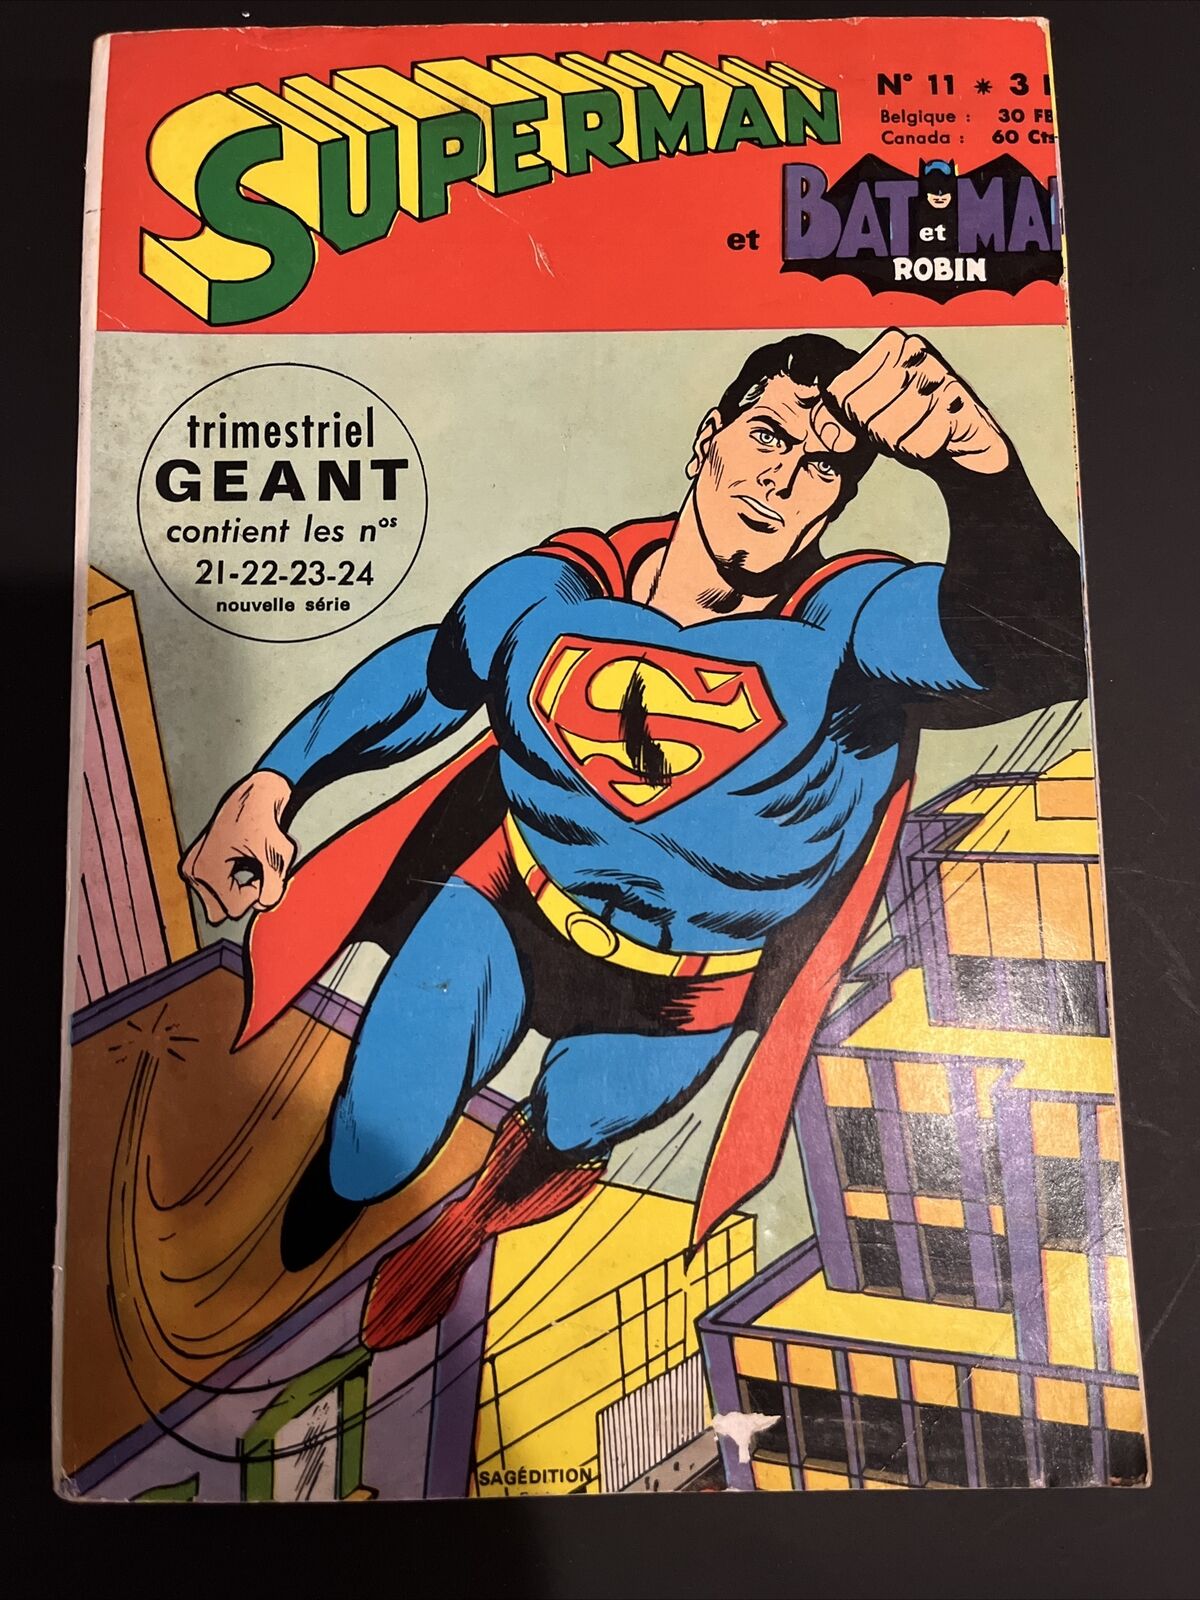 SUPERMAN ET BATMAN ET ROBIN TBP Issues 25,  26, 27, 28 - 1971